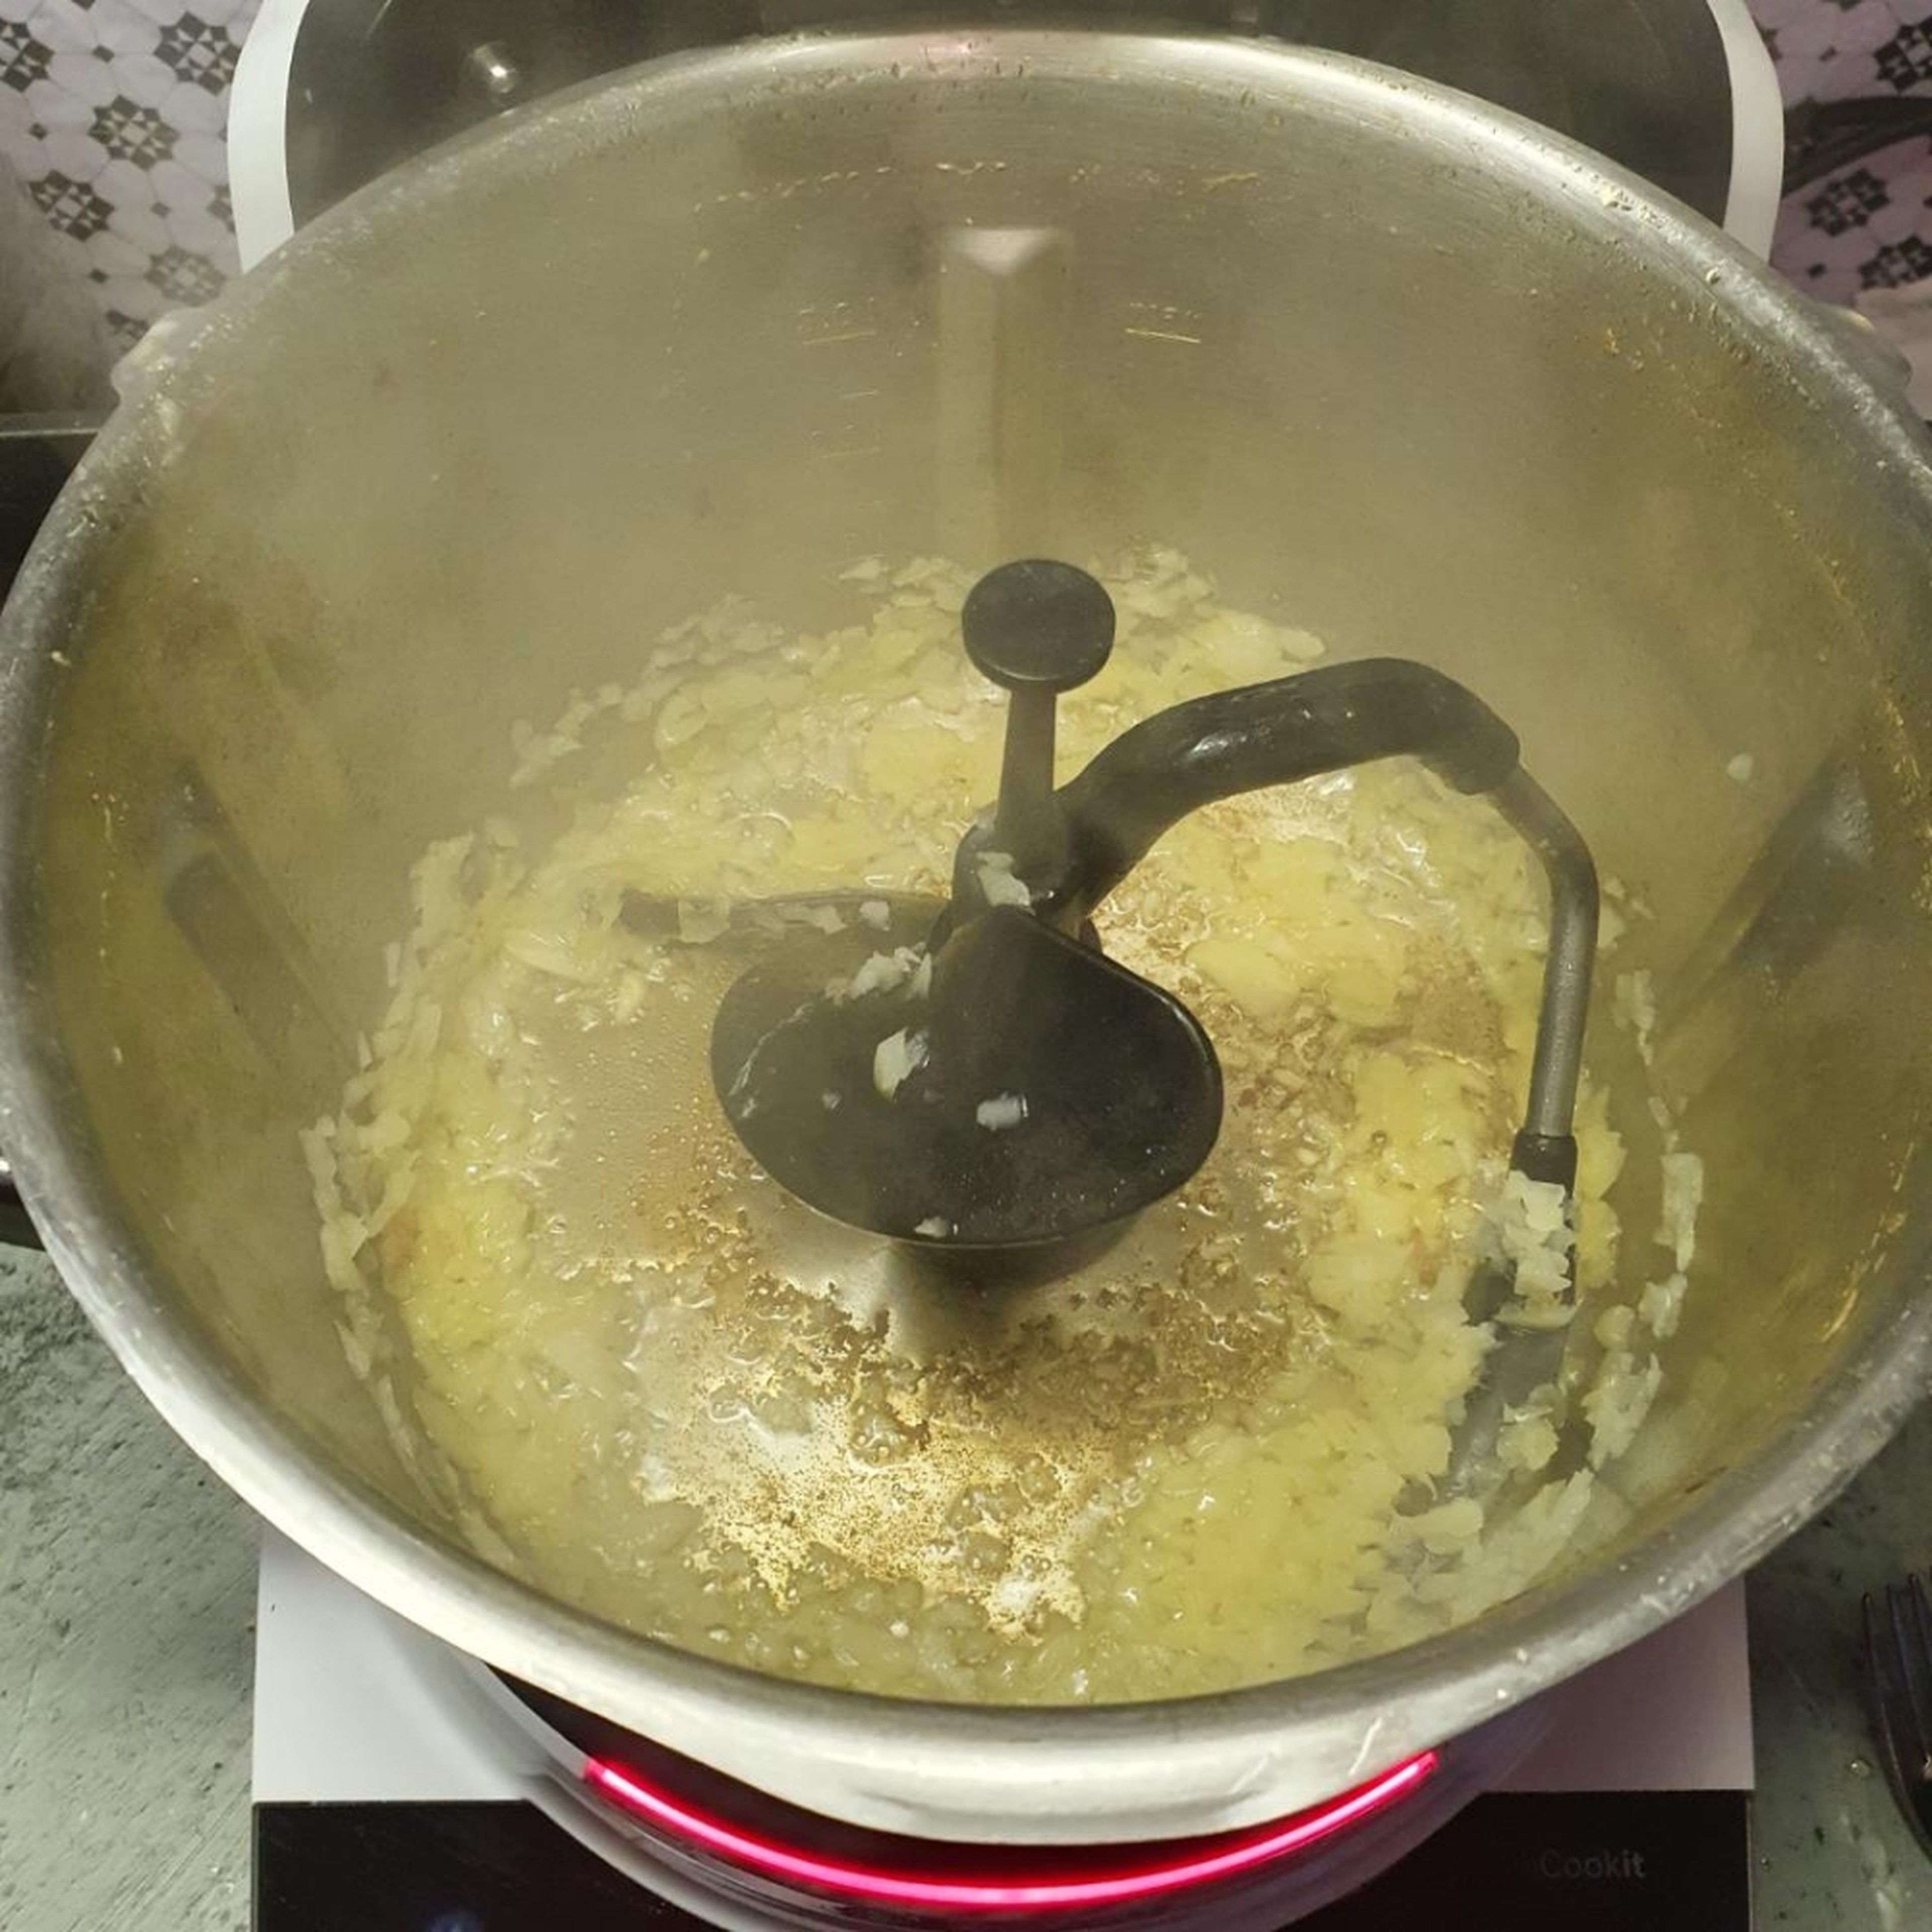 3D-Rührer einsetzen, Olivenöl in den Topf einwiegen, Deckel ohne Messbecher schließen und erhitzen (3D-Rührer | Stufe 5 | 130°C | 1 Minute). Sobald das Öl heiß ist, die beiseite gestellte, klein geschnittene Zwiebel zugeben, Deckel ohne Messbecher schließen und andünsten (3D-Rührer | Stufe 5 | 130°C | 2 Minuten).